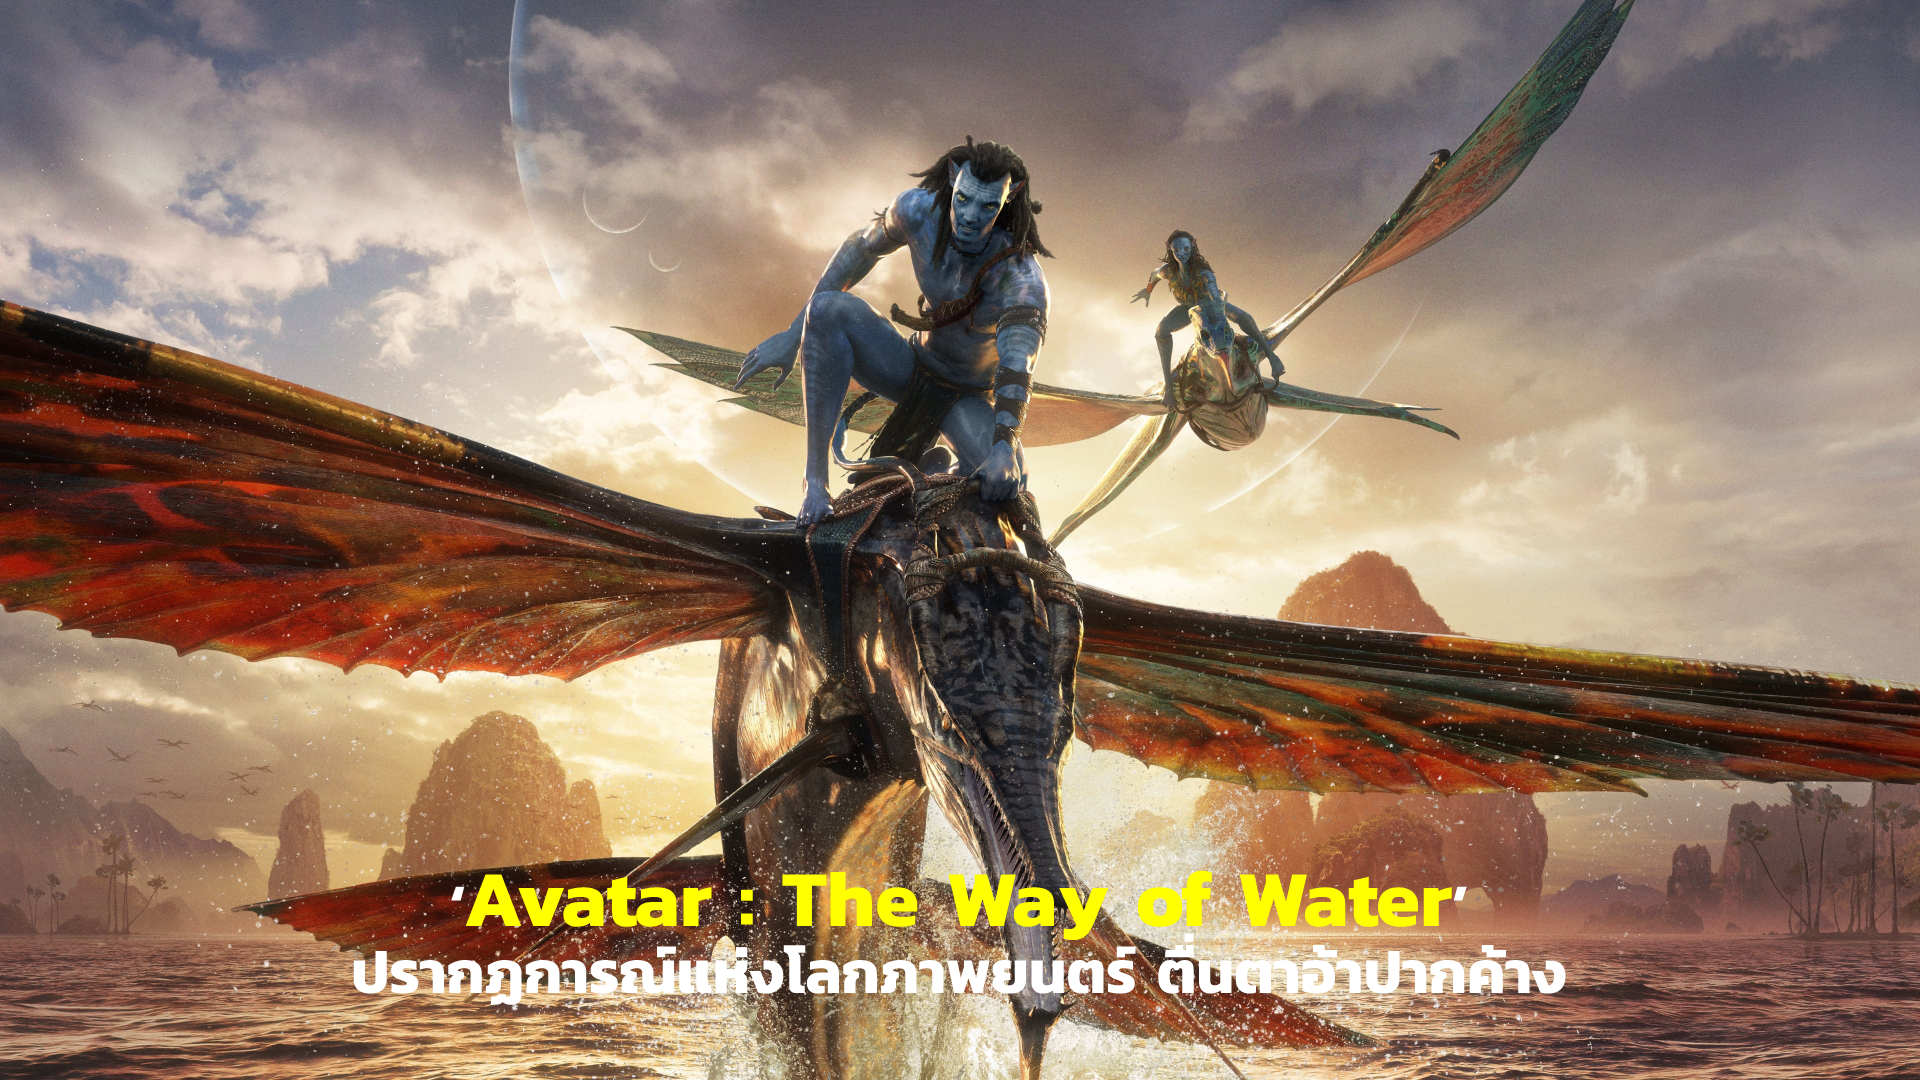 [REVIEW] ‘Avatar : The Way of Water’ ปรากฏการณ์แห่งโลกภาพยนตร์ ตื่นตาอ้าปากค้าง | GOSSIP GUN